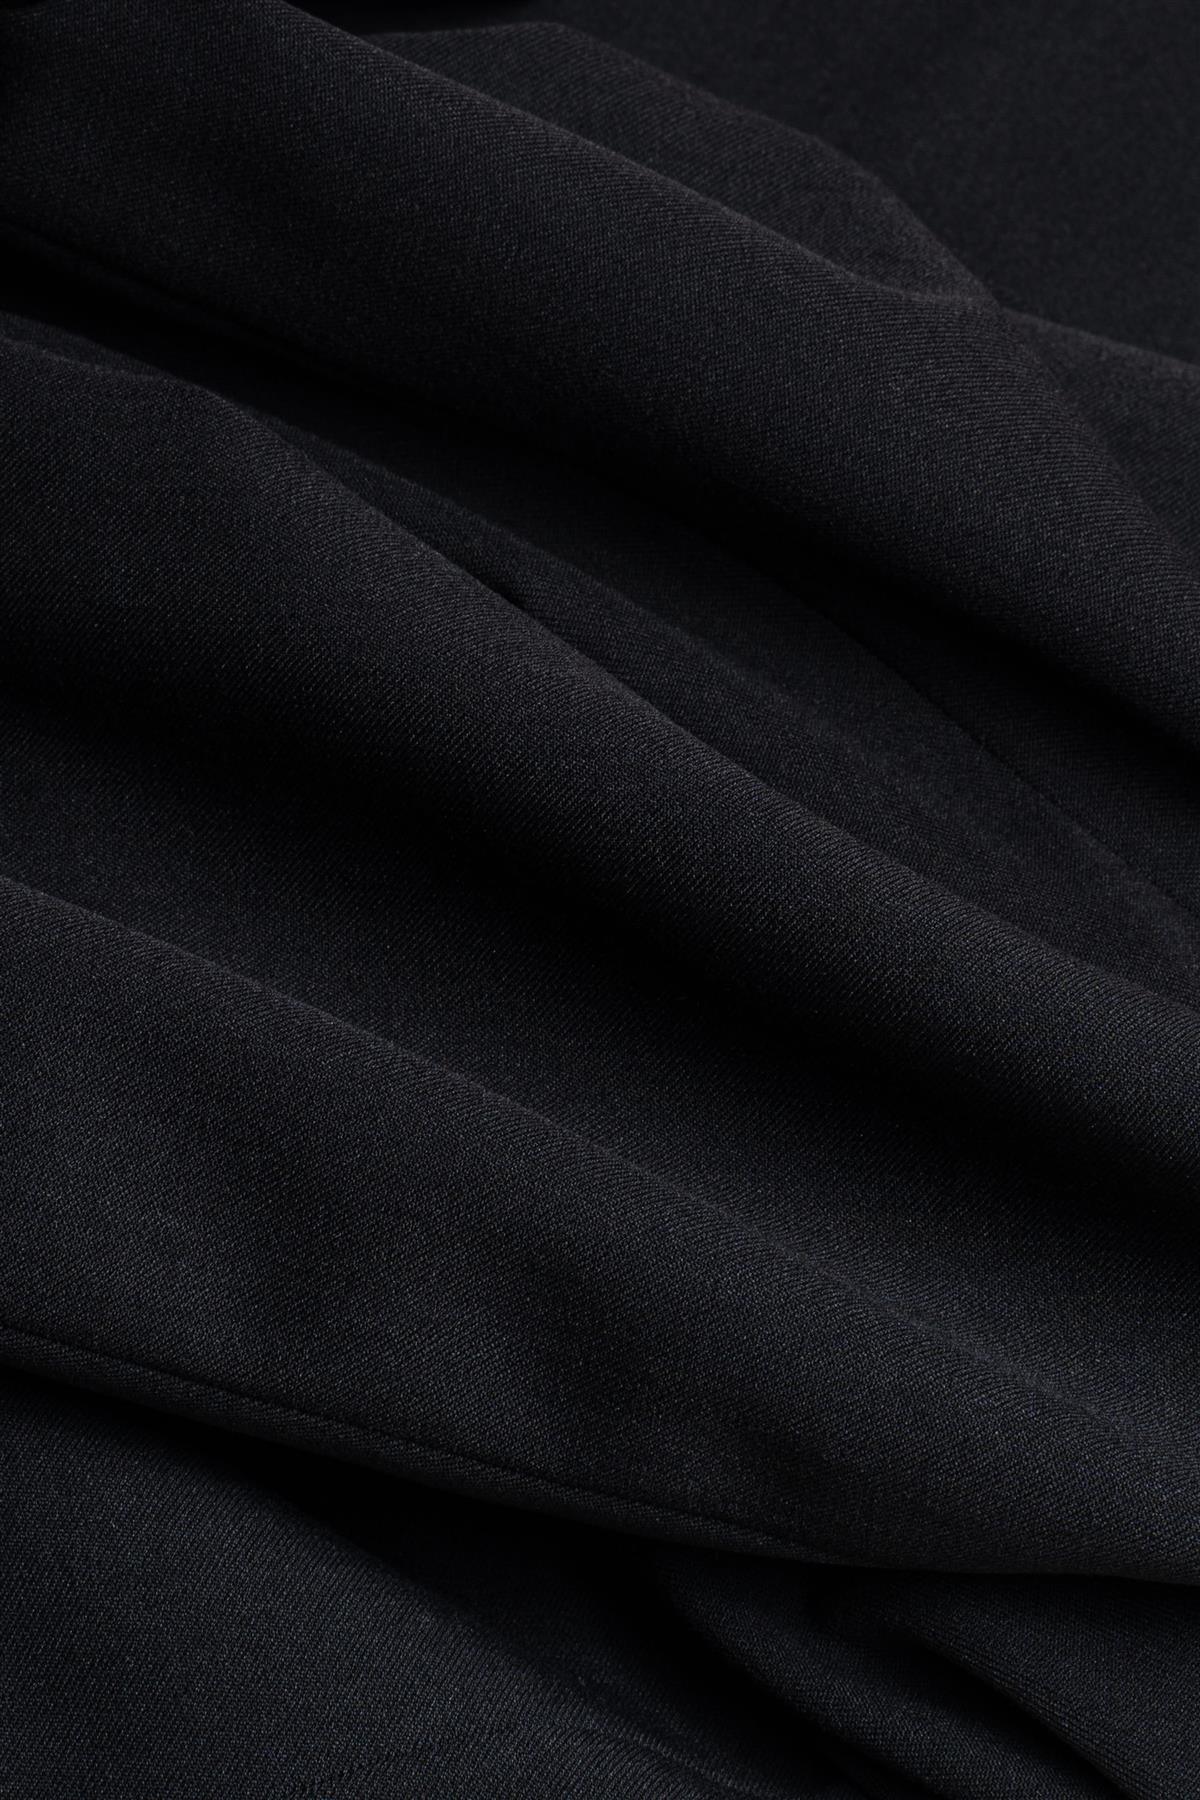 Tux black blazer fabric swatch